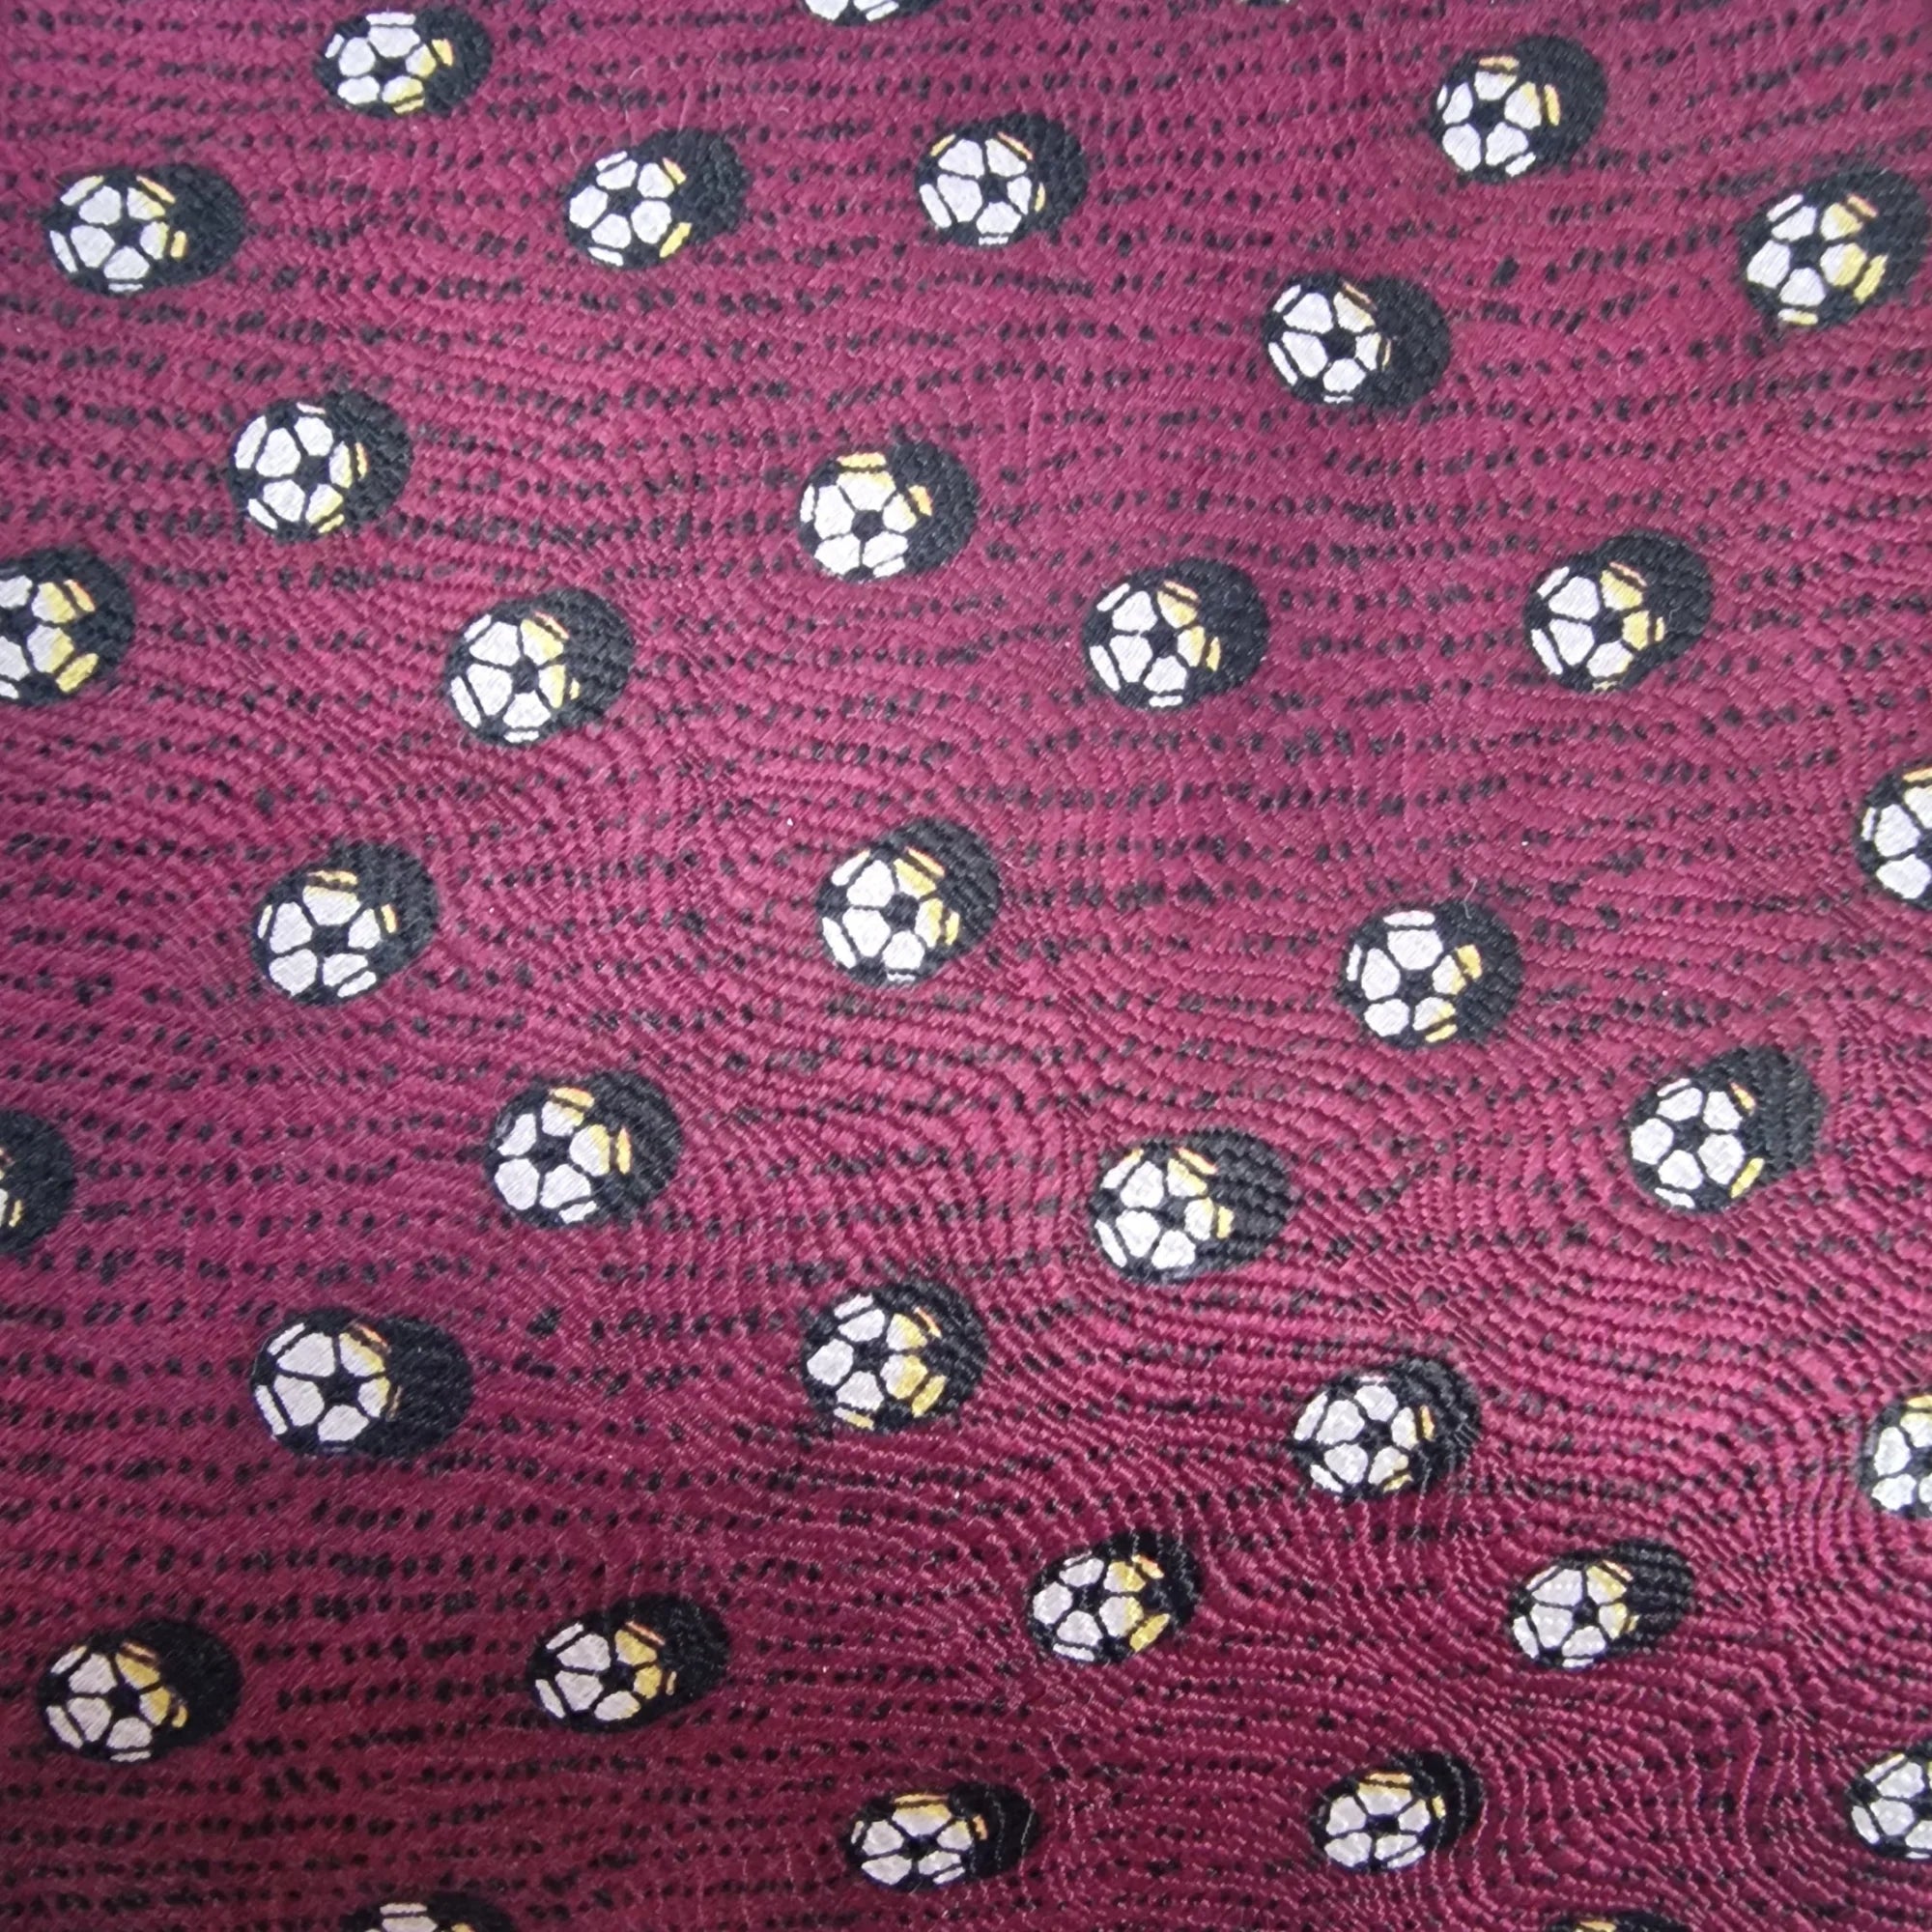 Vintage Silk Elegance Football Necktie - Ties - 3 - 2862